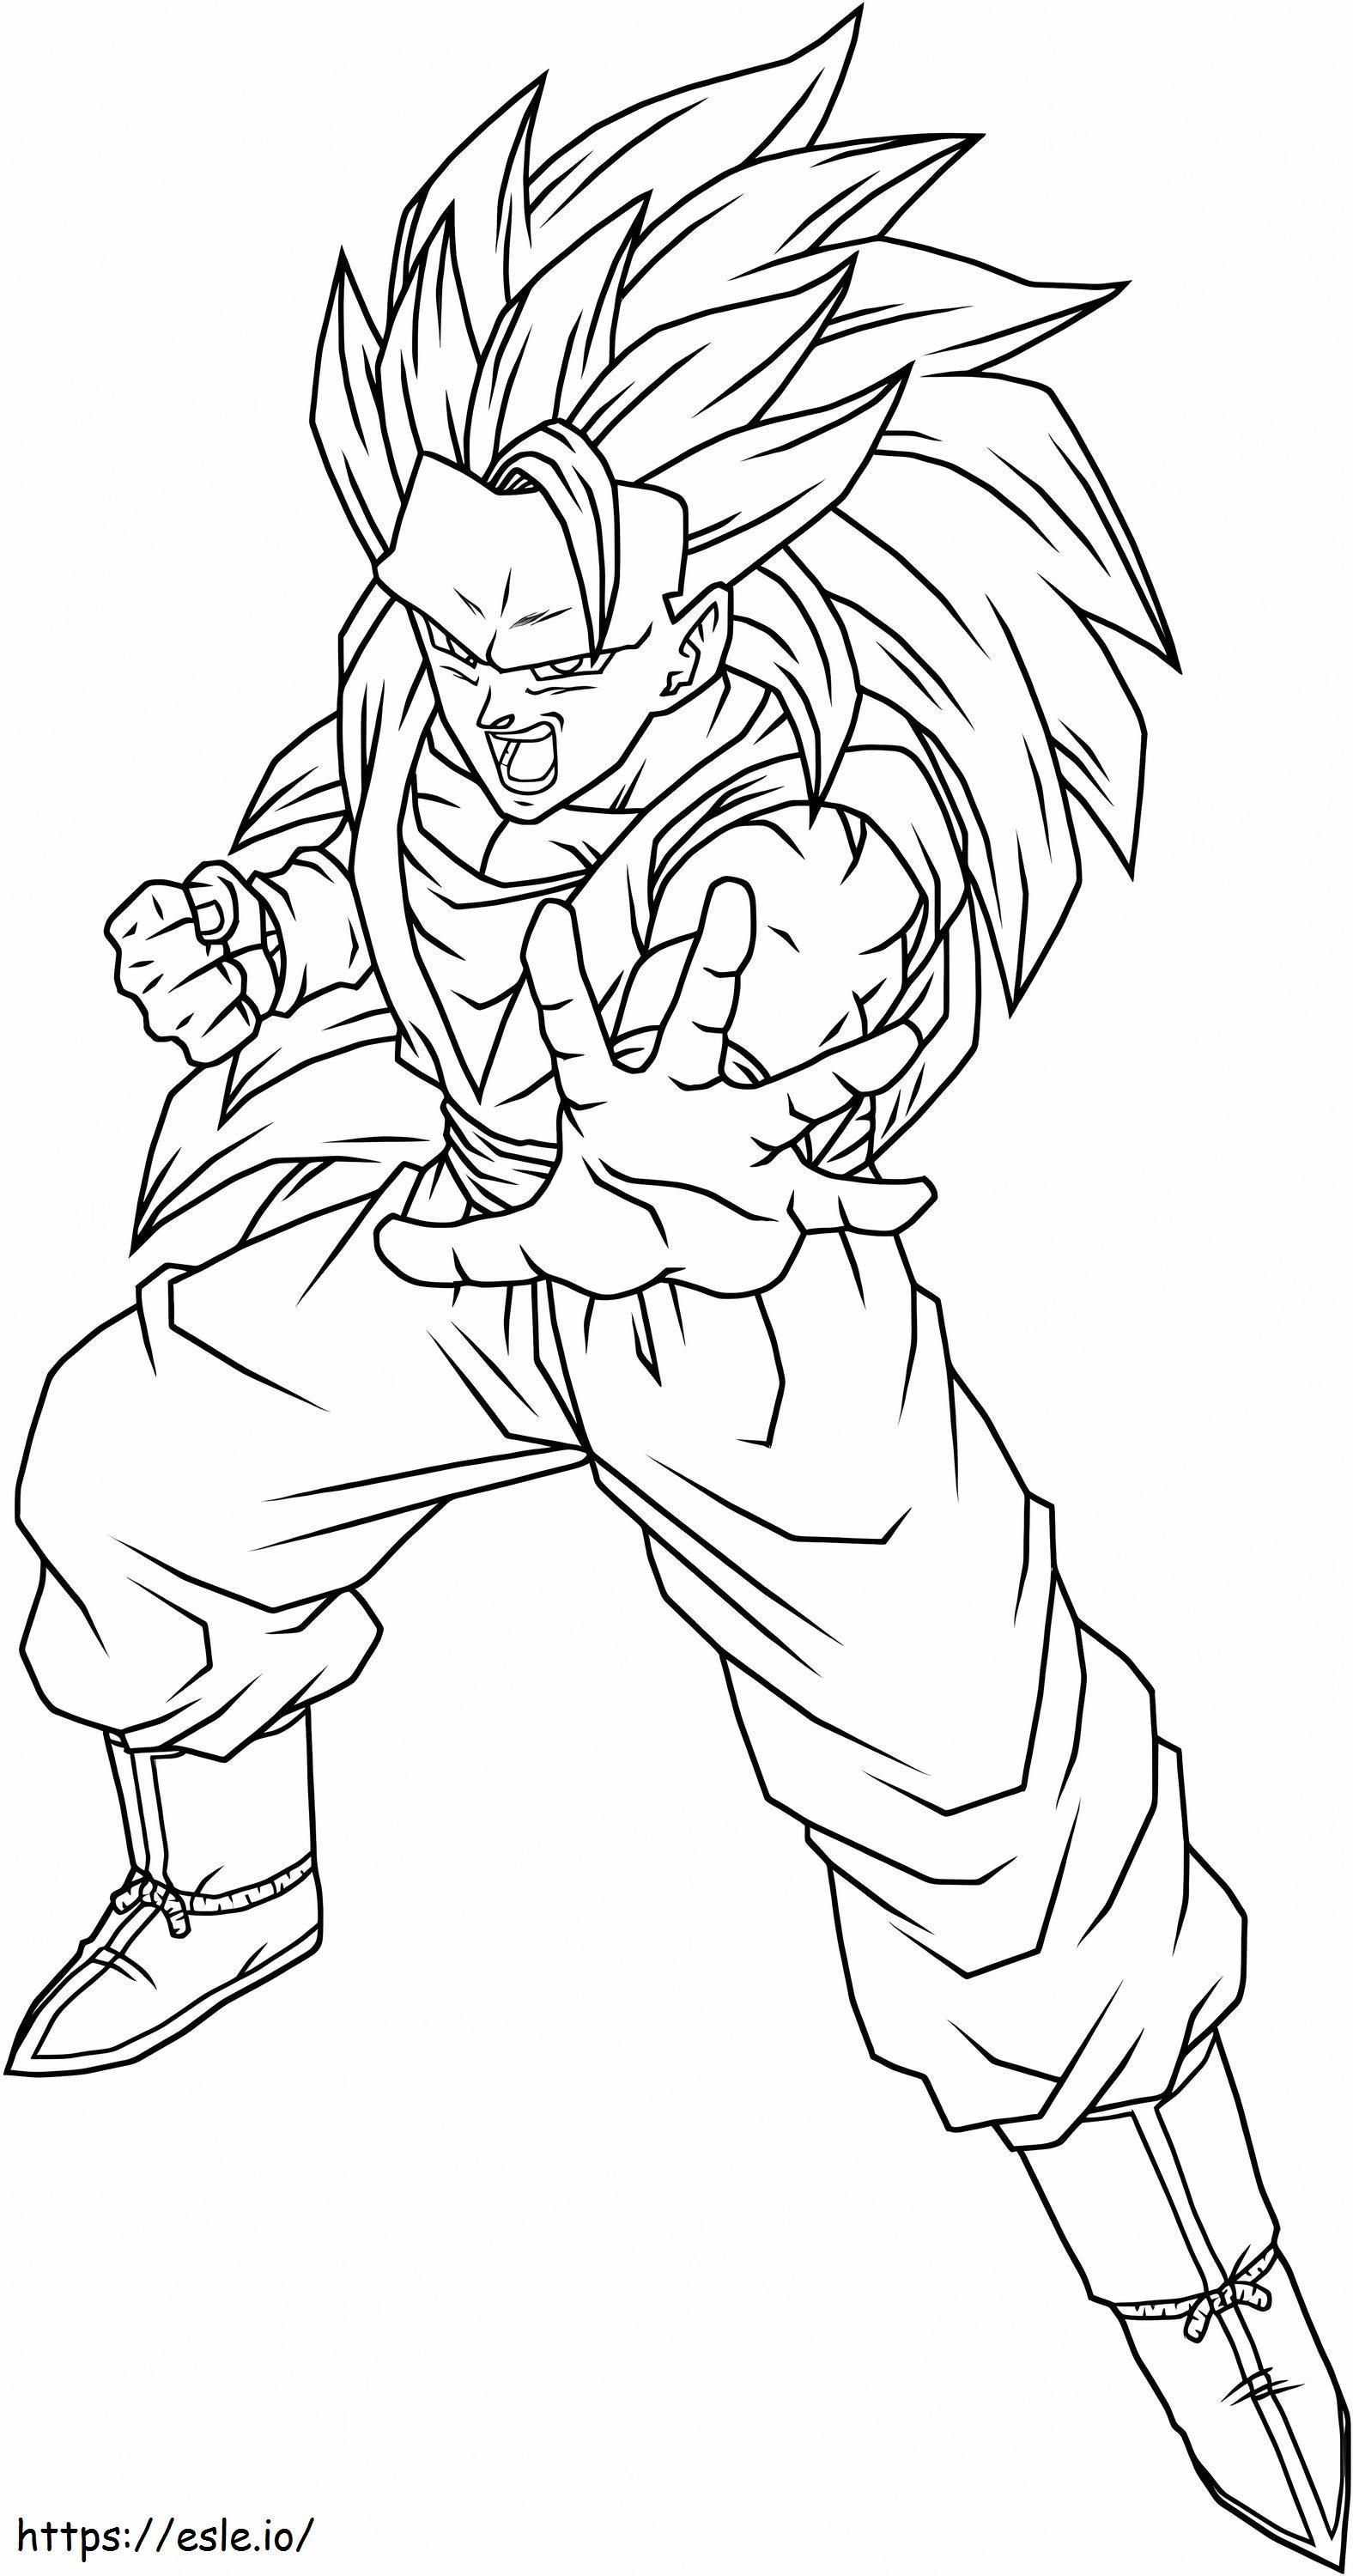 Imponujący Goku SSj3 kolorowanka